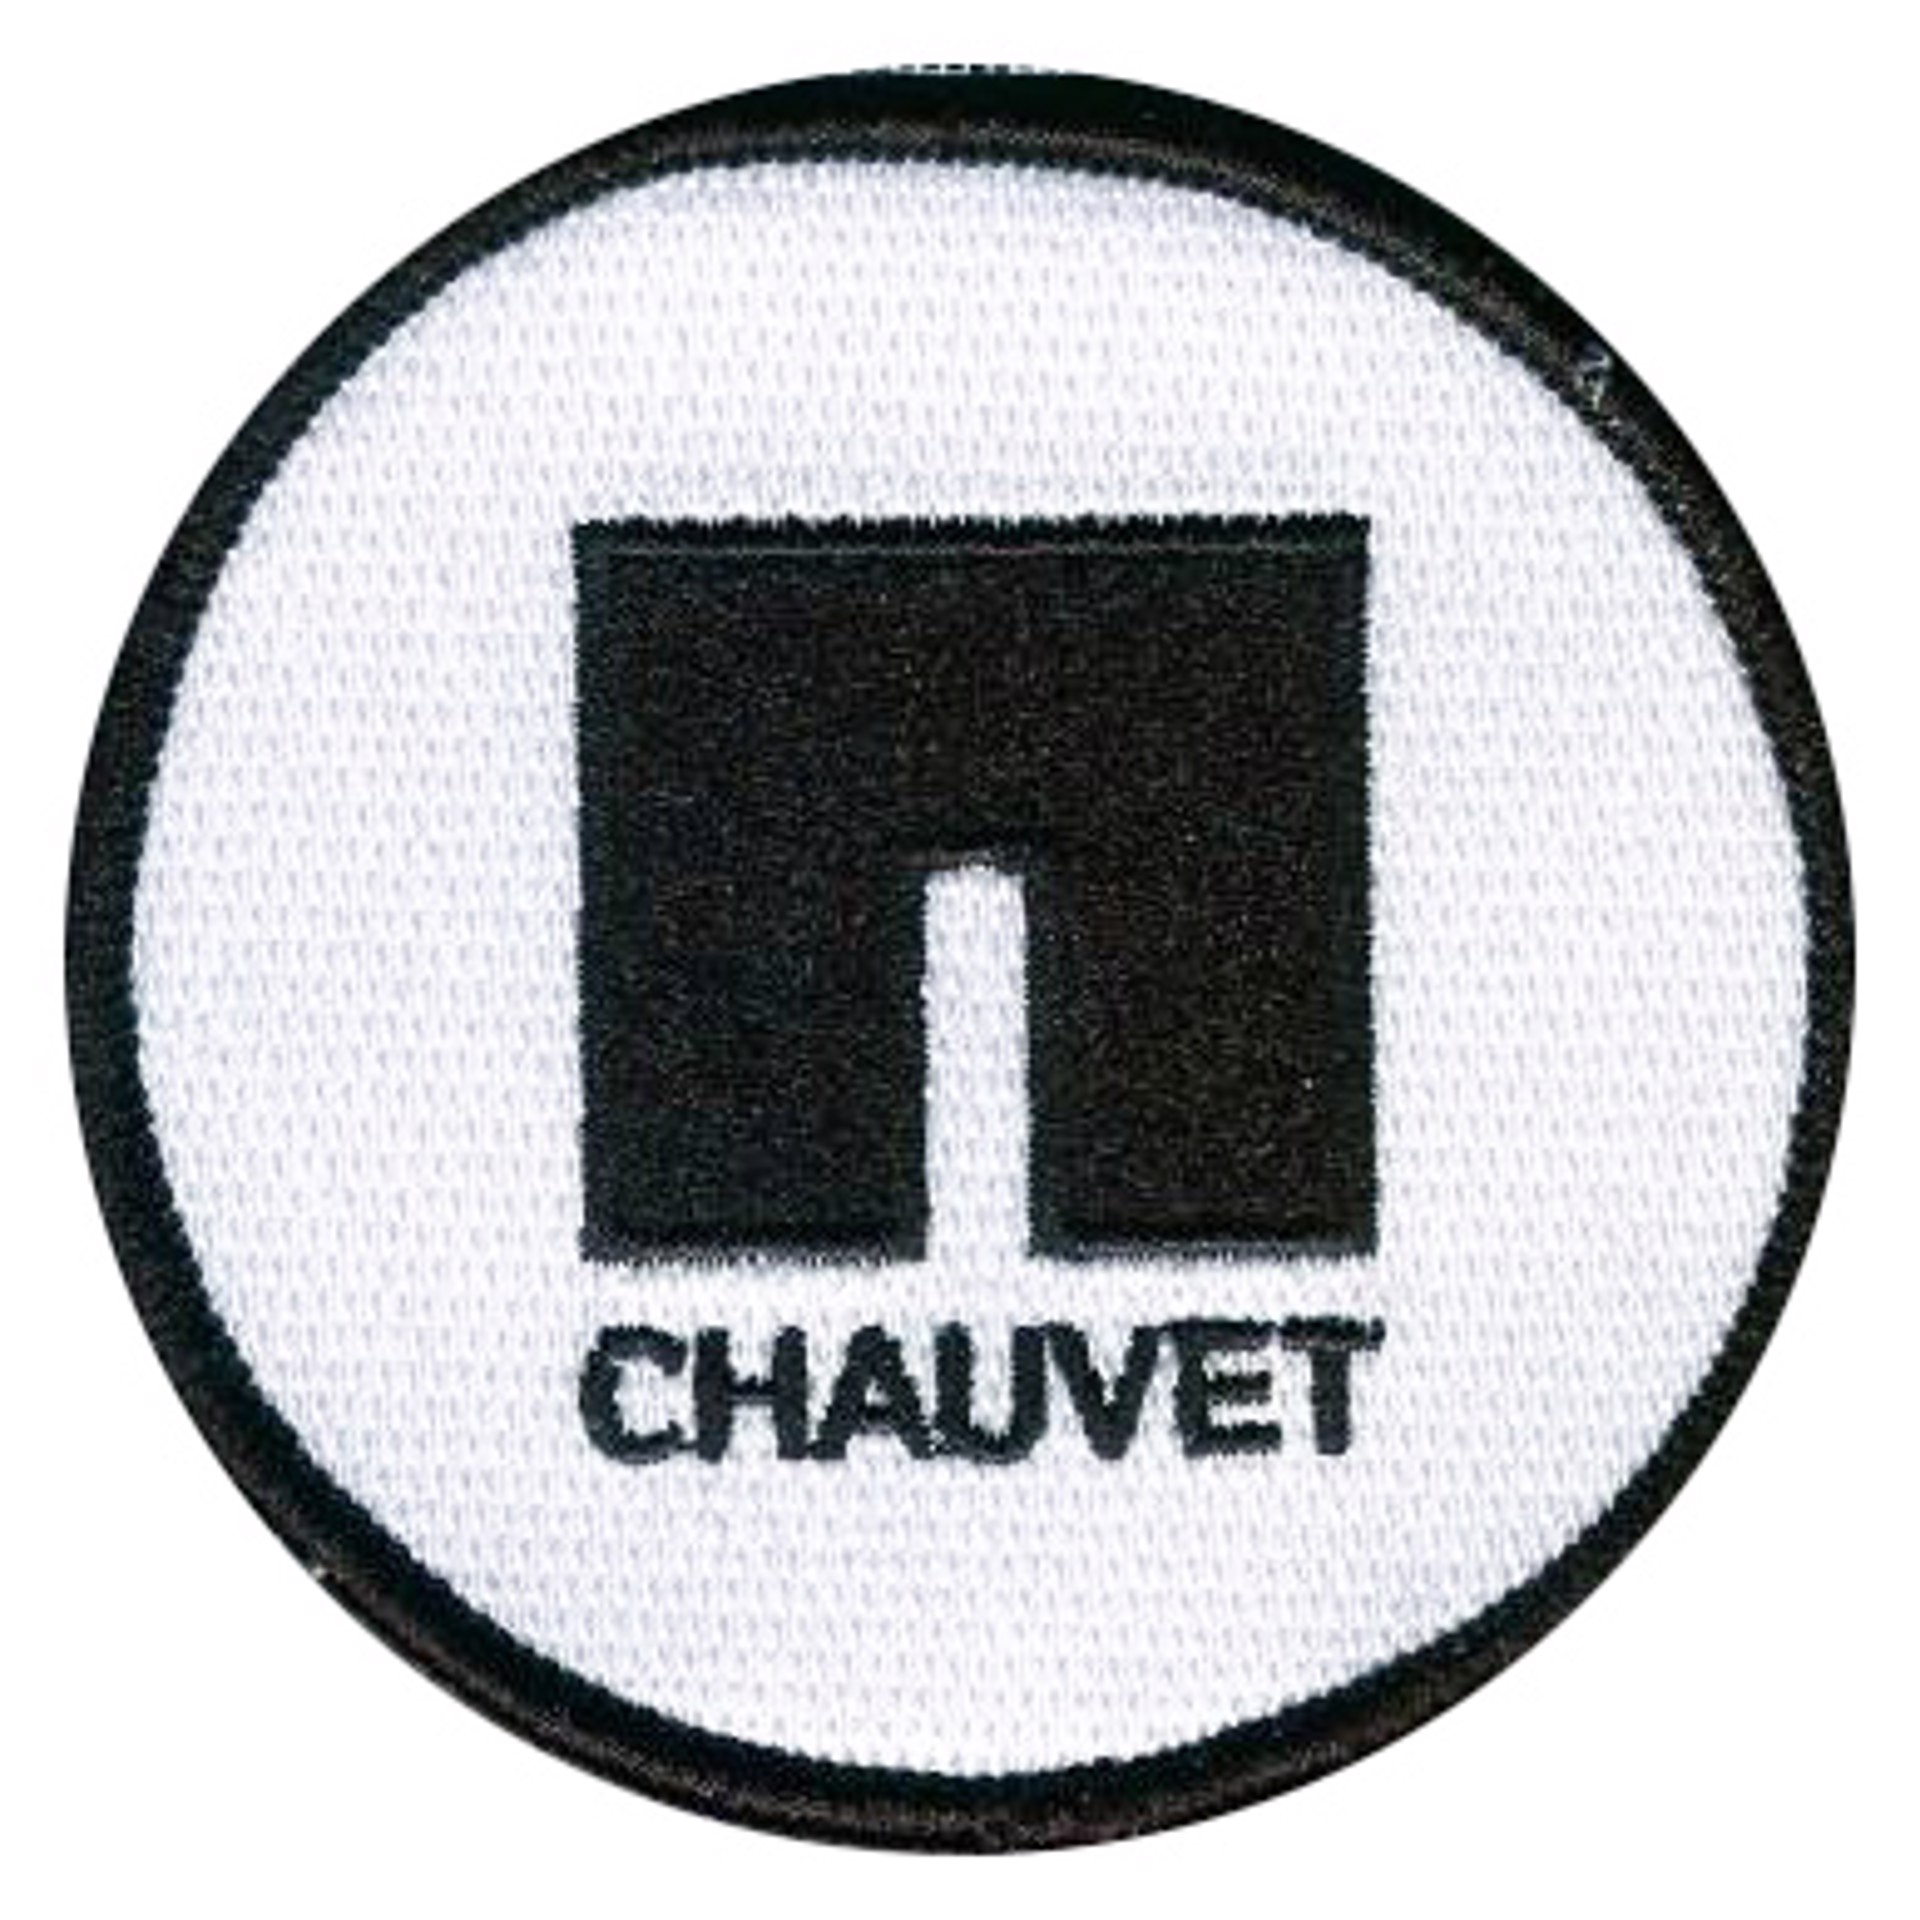 Chauvet Arts Patches by Chauvet Arts